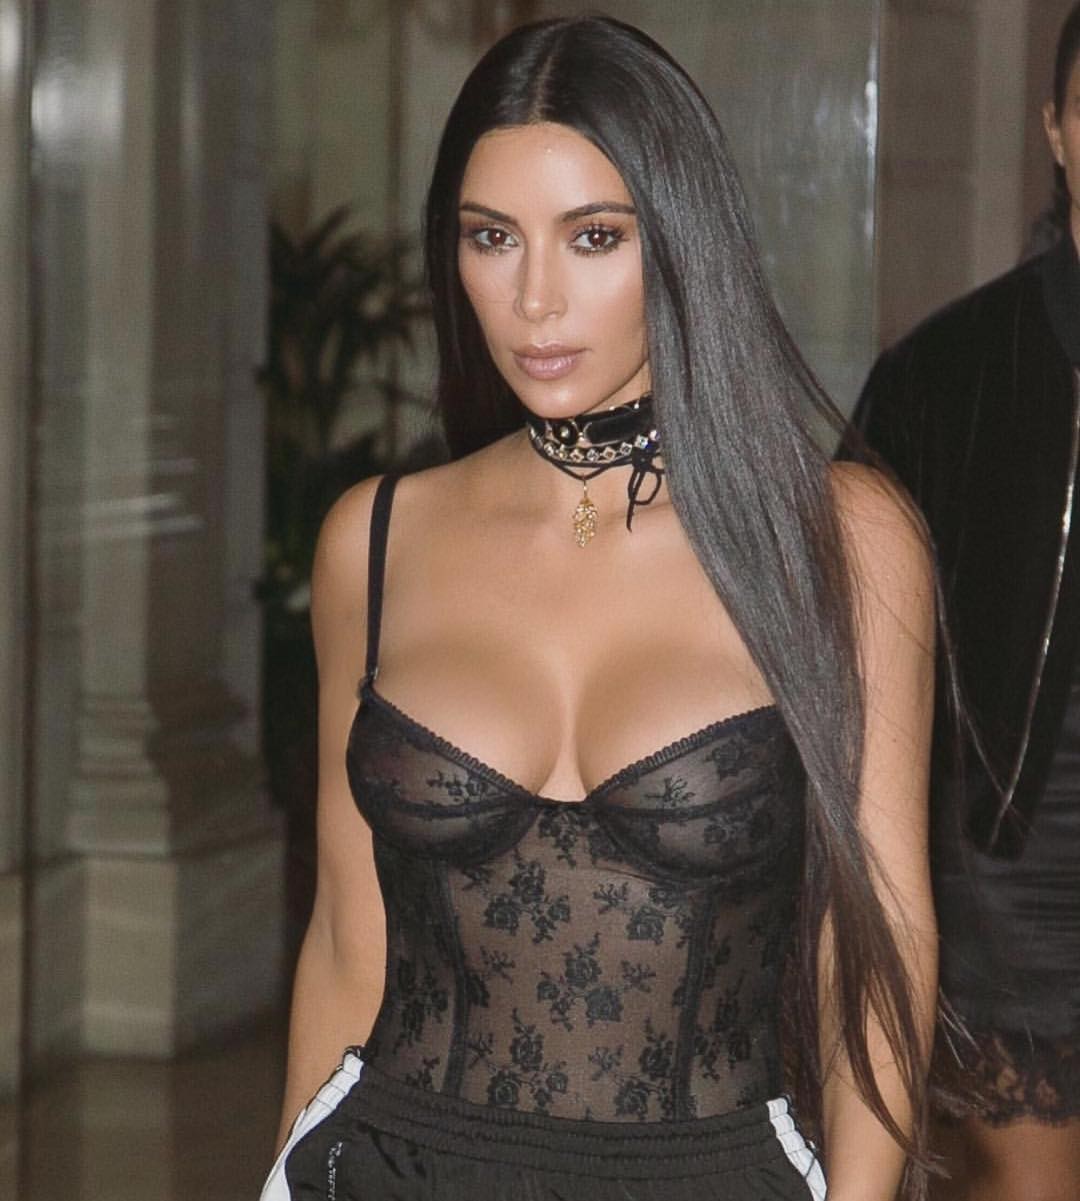 O cabelão superlongo como nesta foto de Kim Kardashian está em alta (Foto: Reprodução/Instagram)